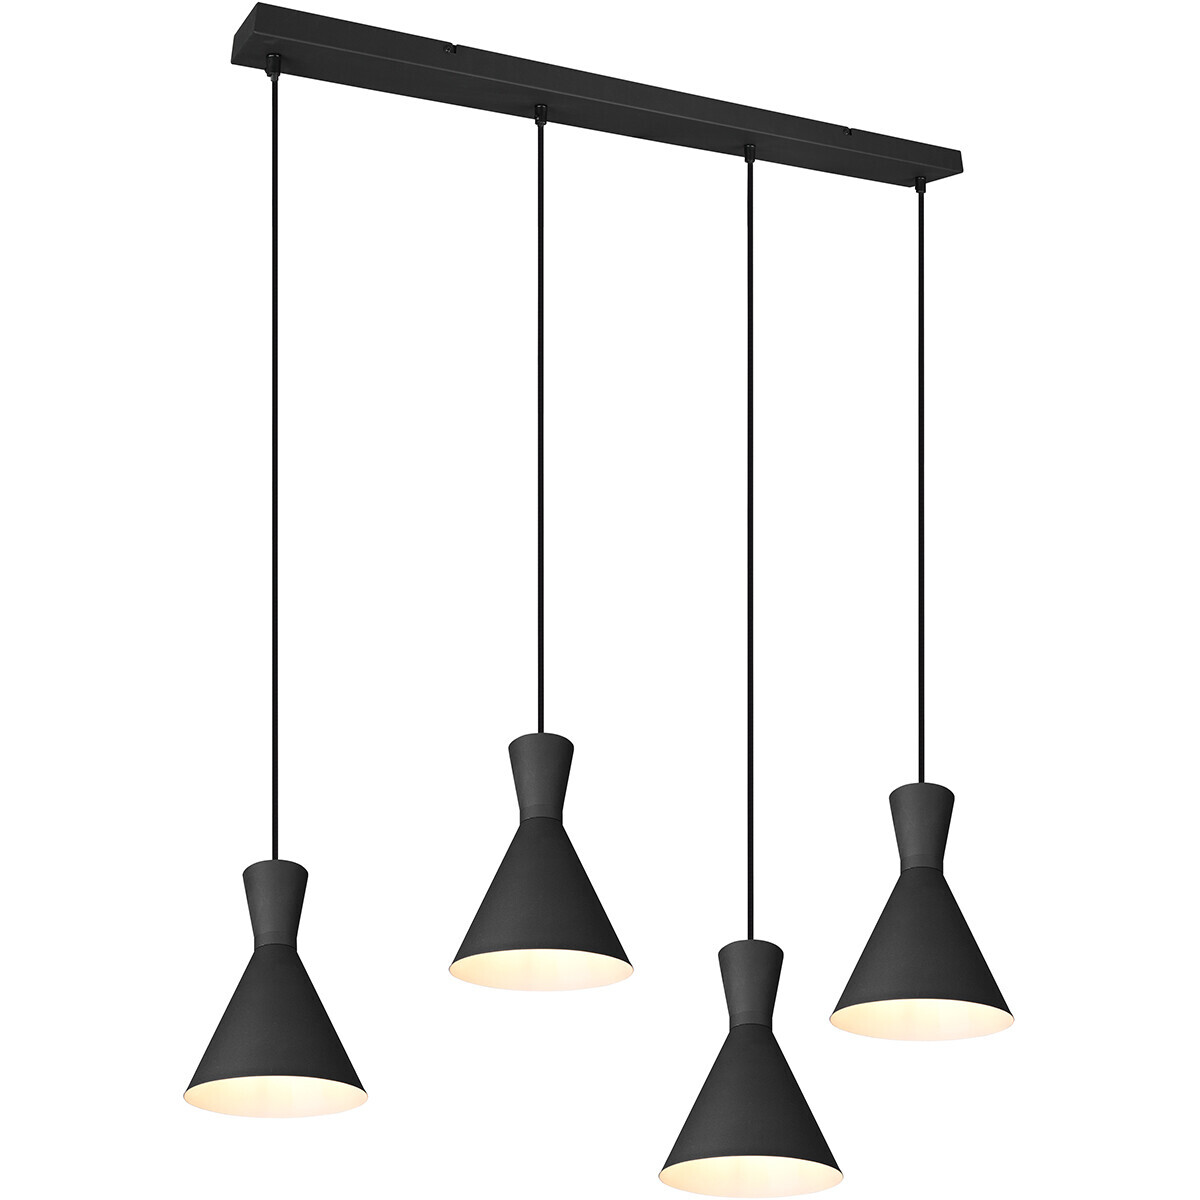 BES LED LED Hanglamp - Trion Ewomi - E27 Fitting - 4-lichts - Rechthoek - Mat Zwart - Aluminium